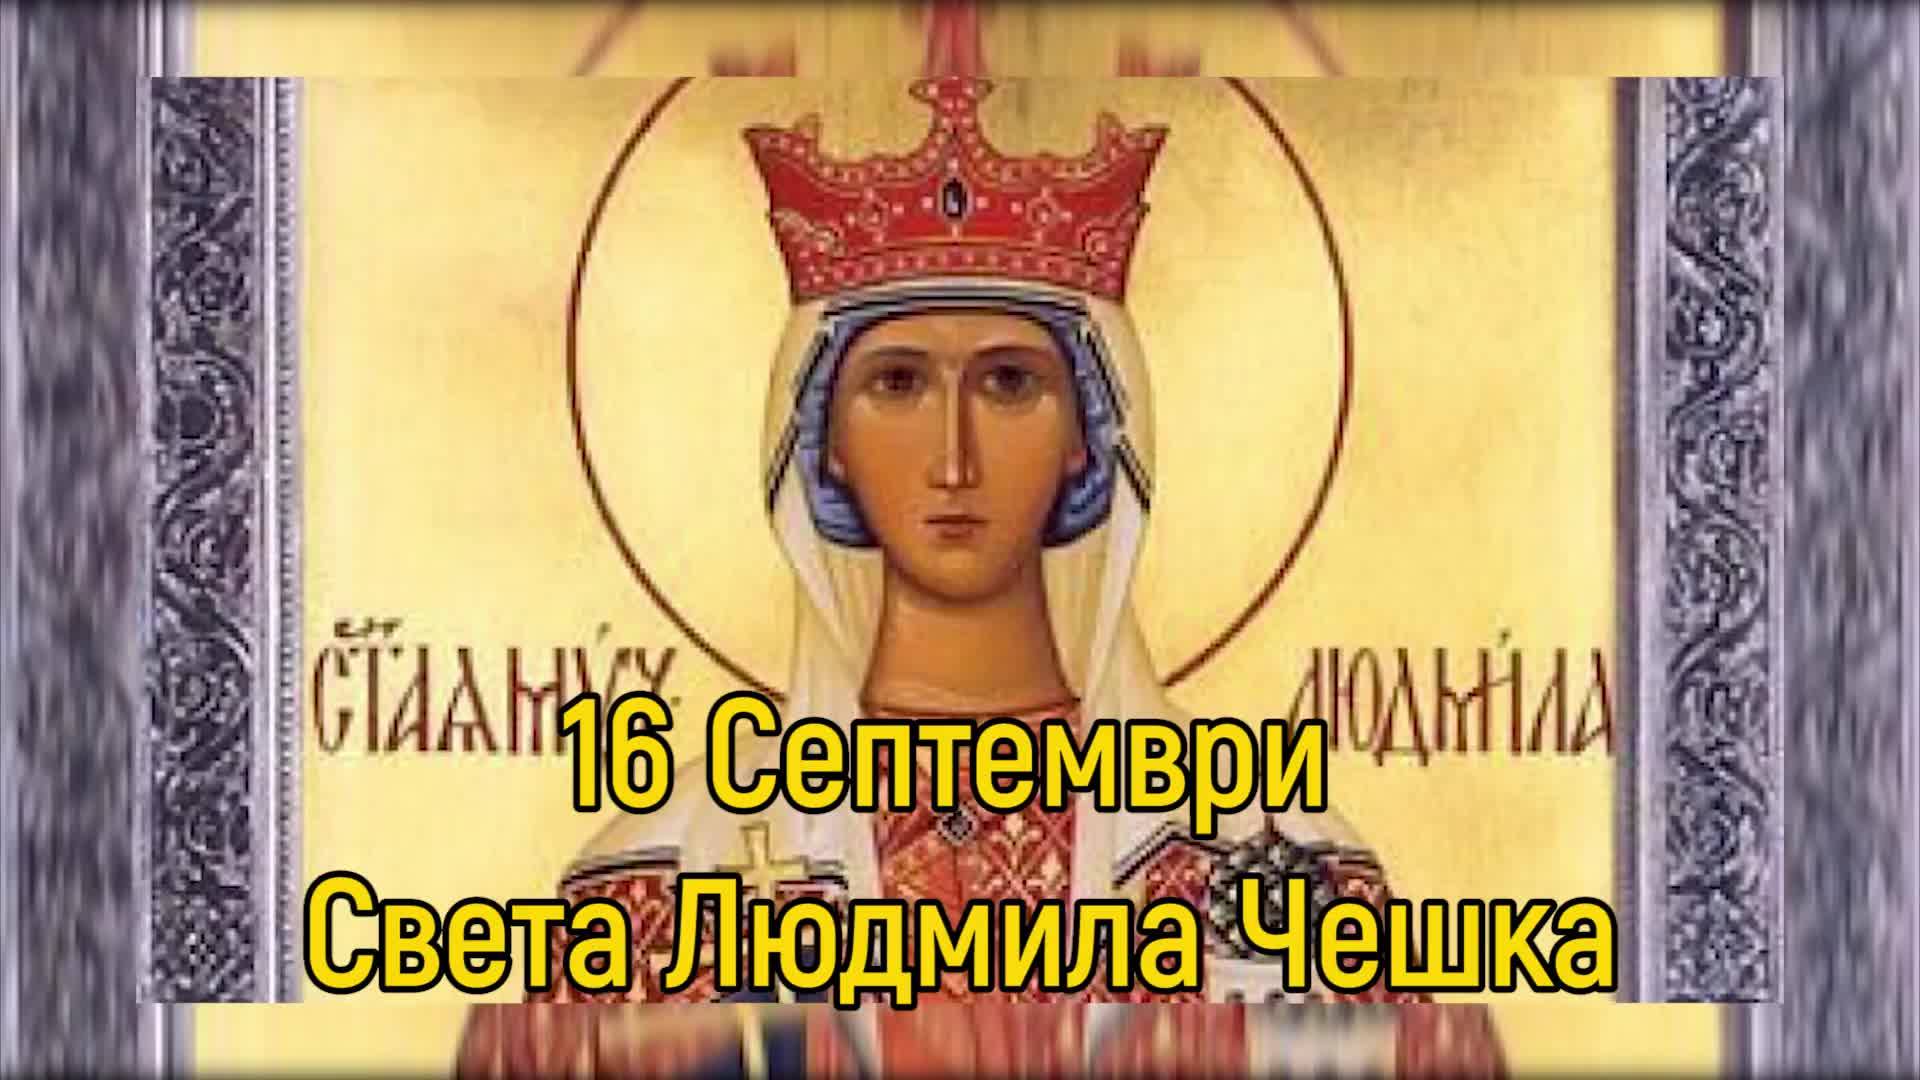 16 септември - Света Людмила Чешка